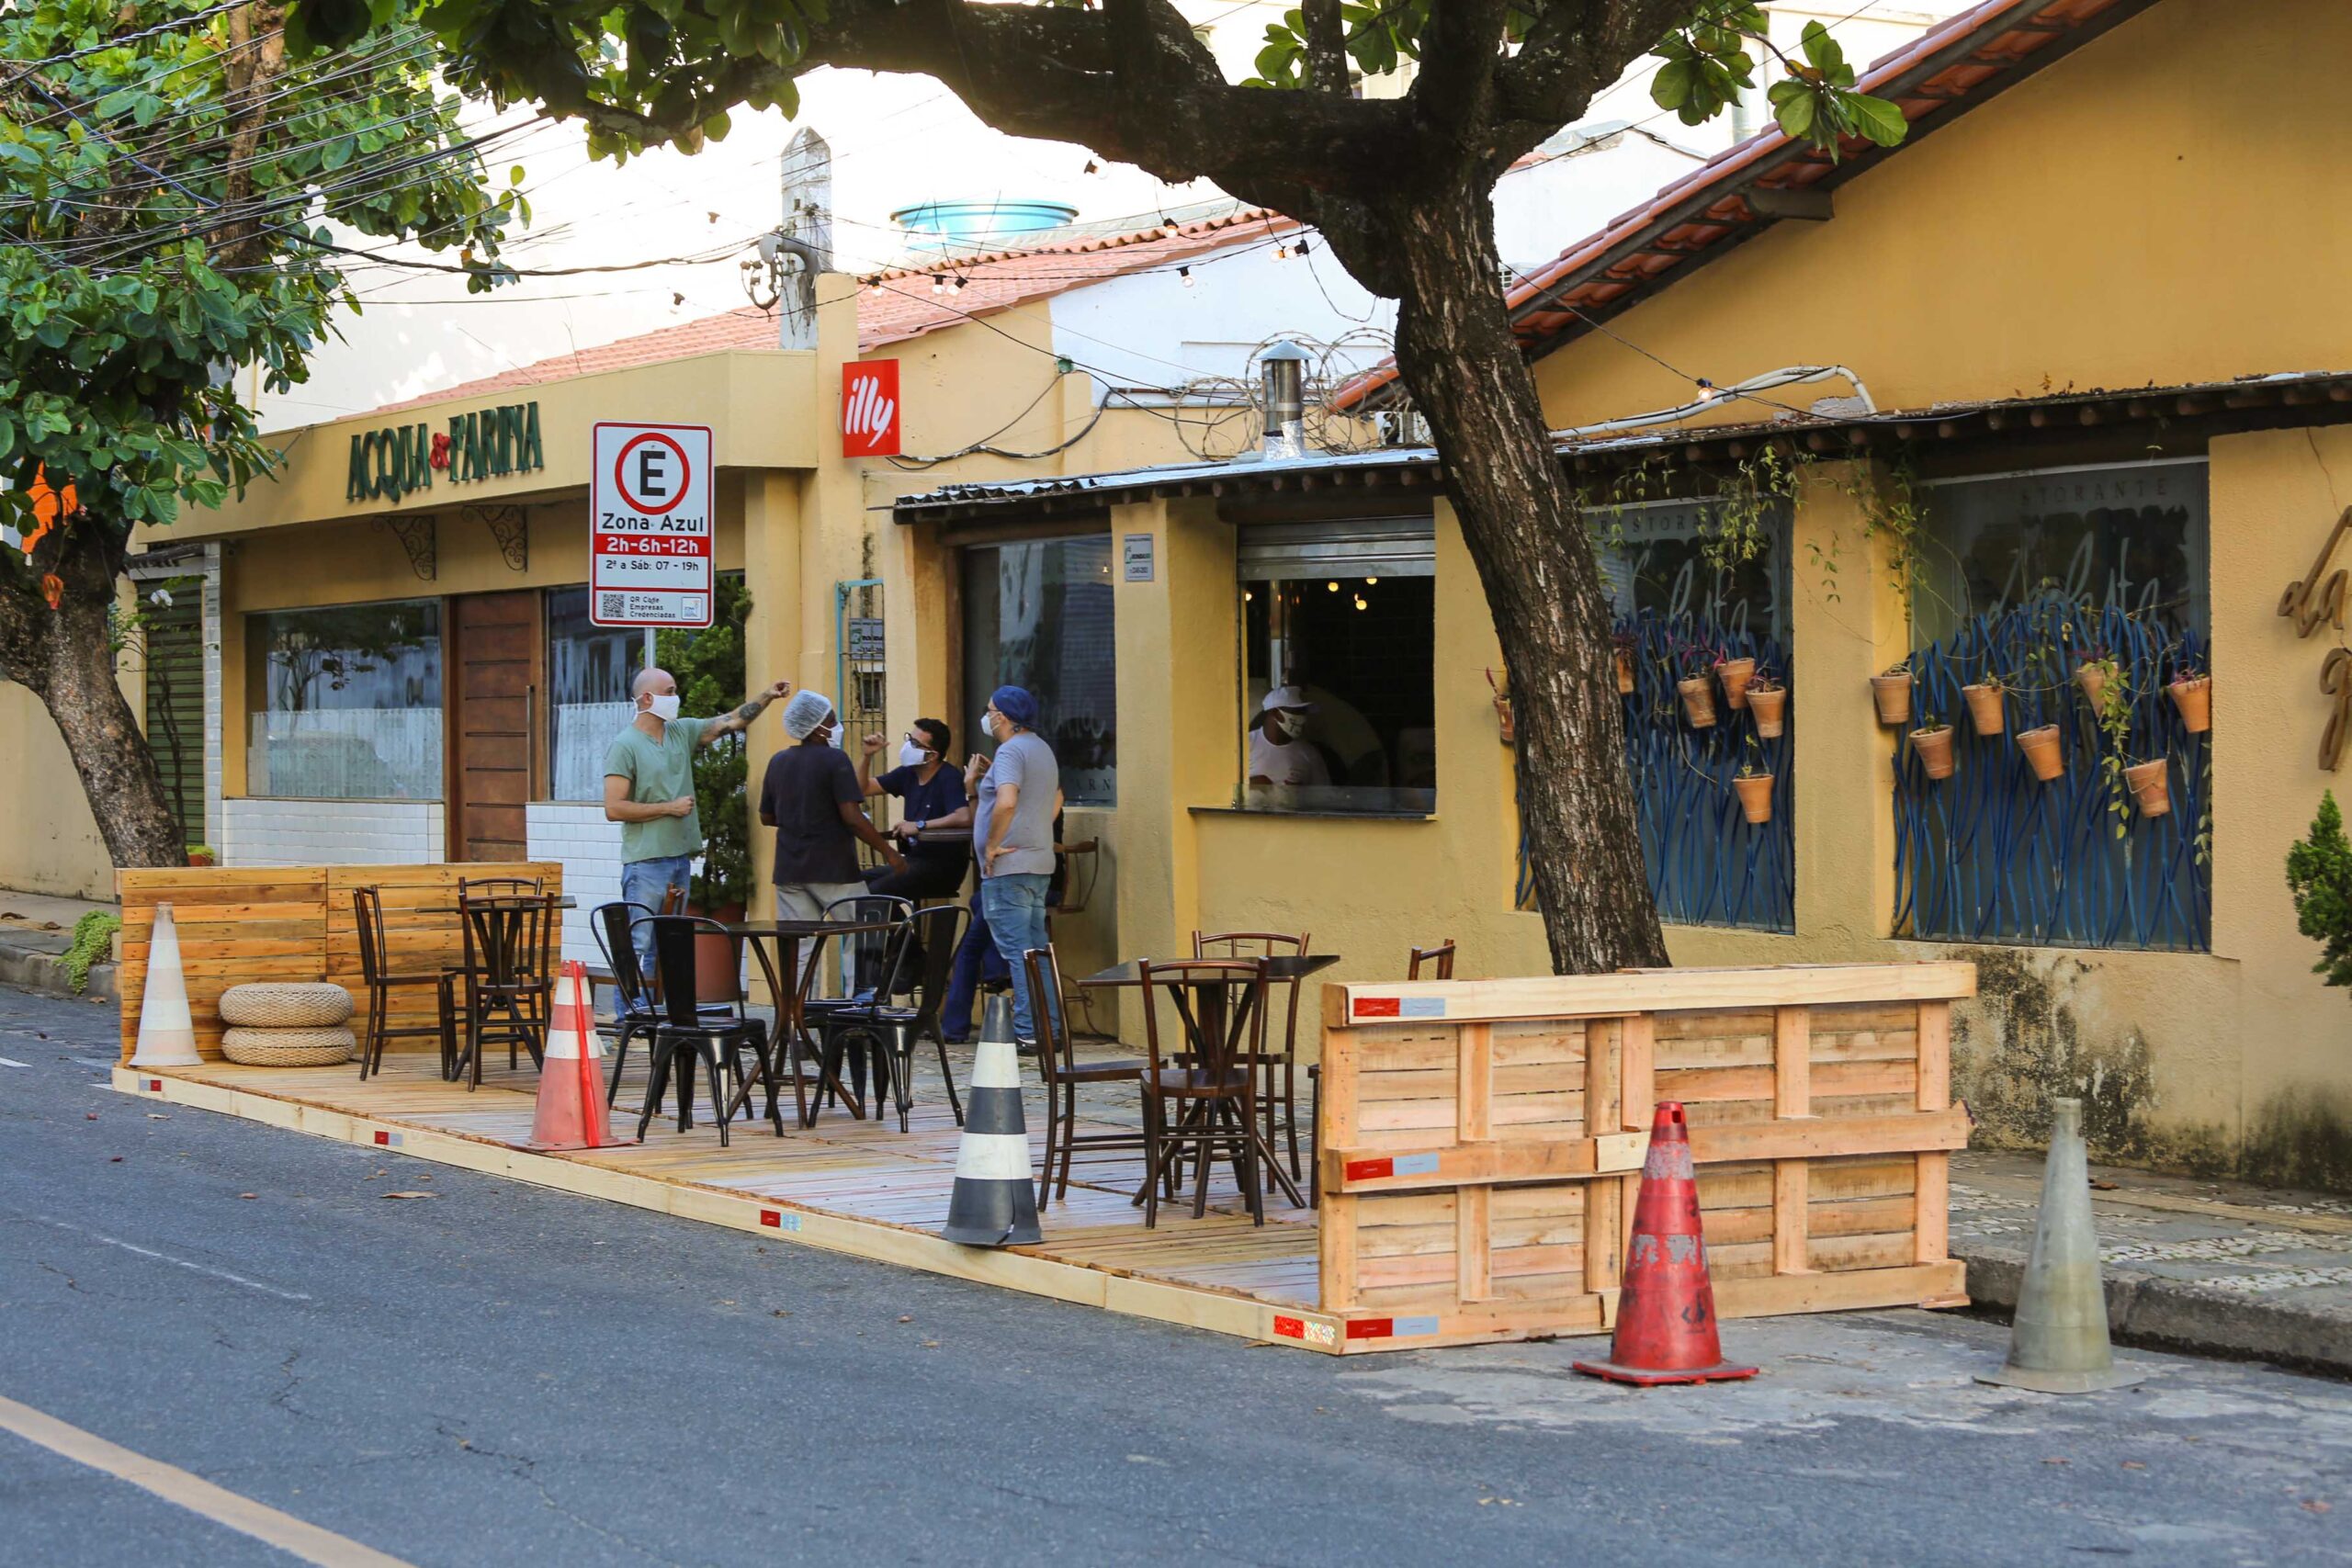 Salvador já tem restaurante ocupando espaço público com autorização